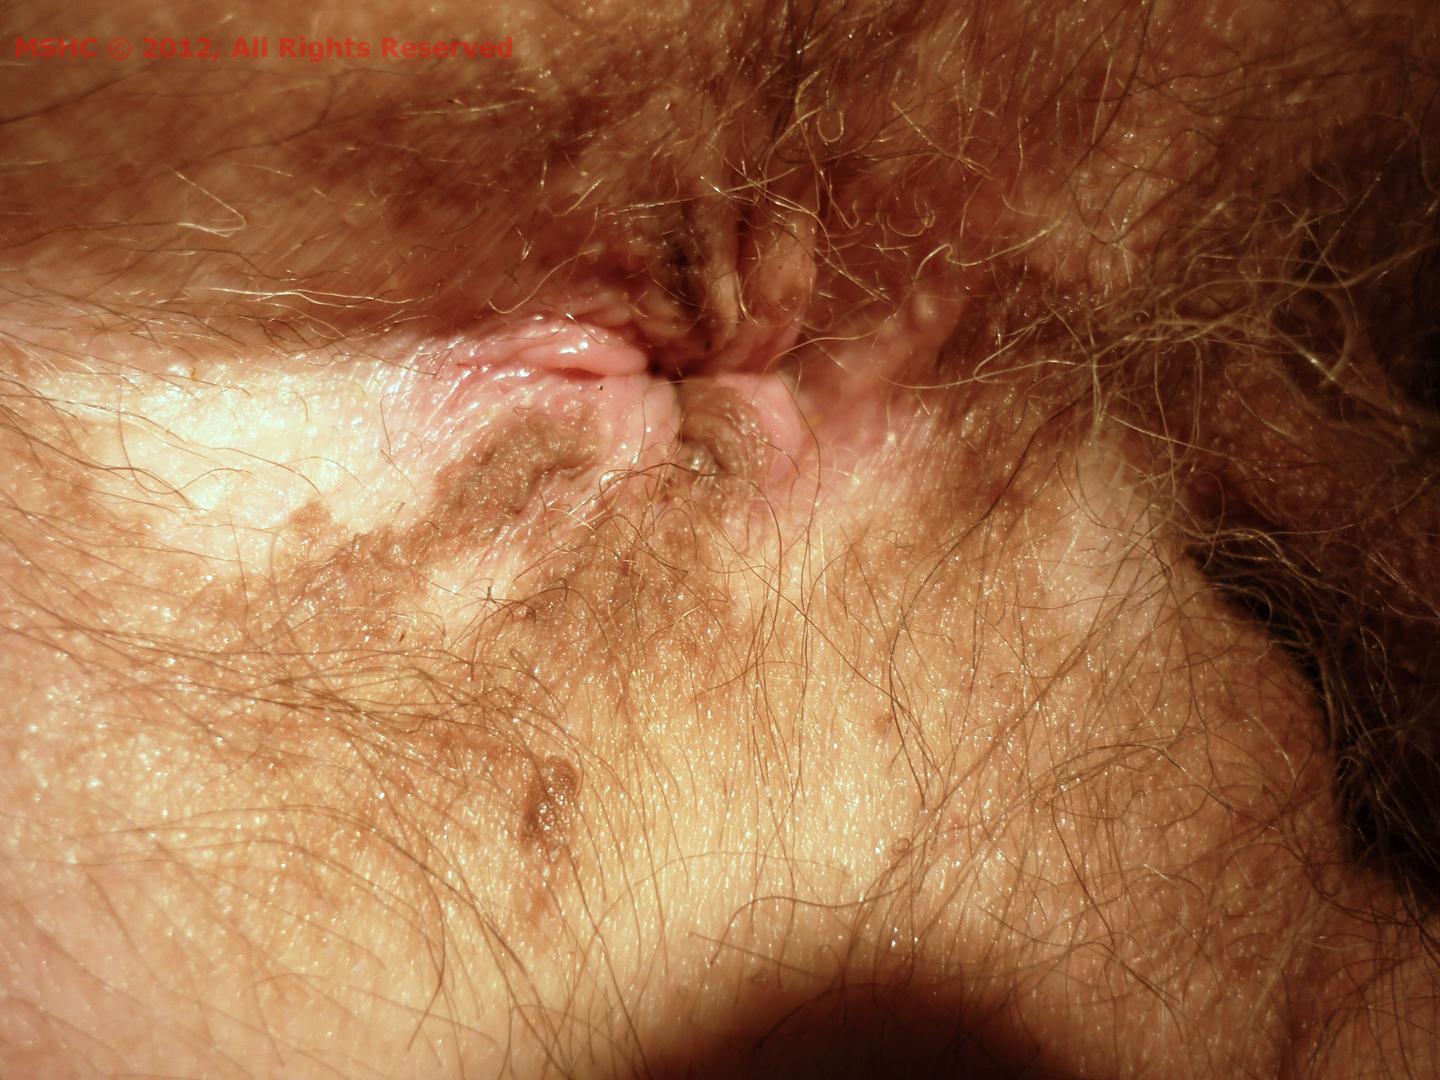 Vitiligo of the penis